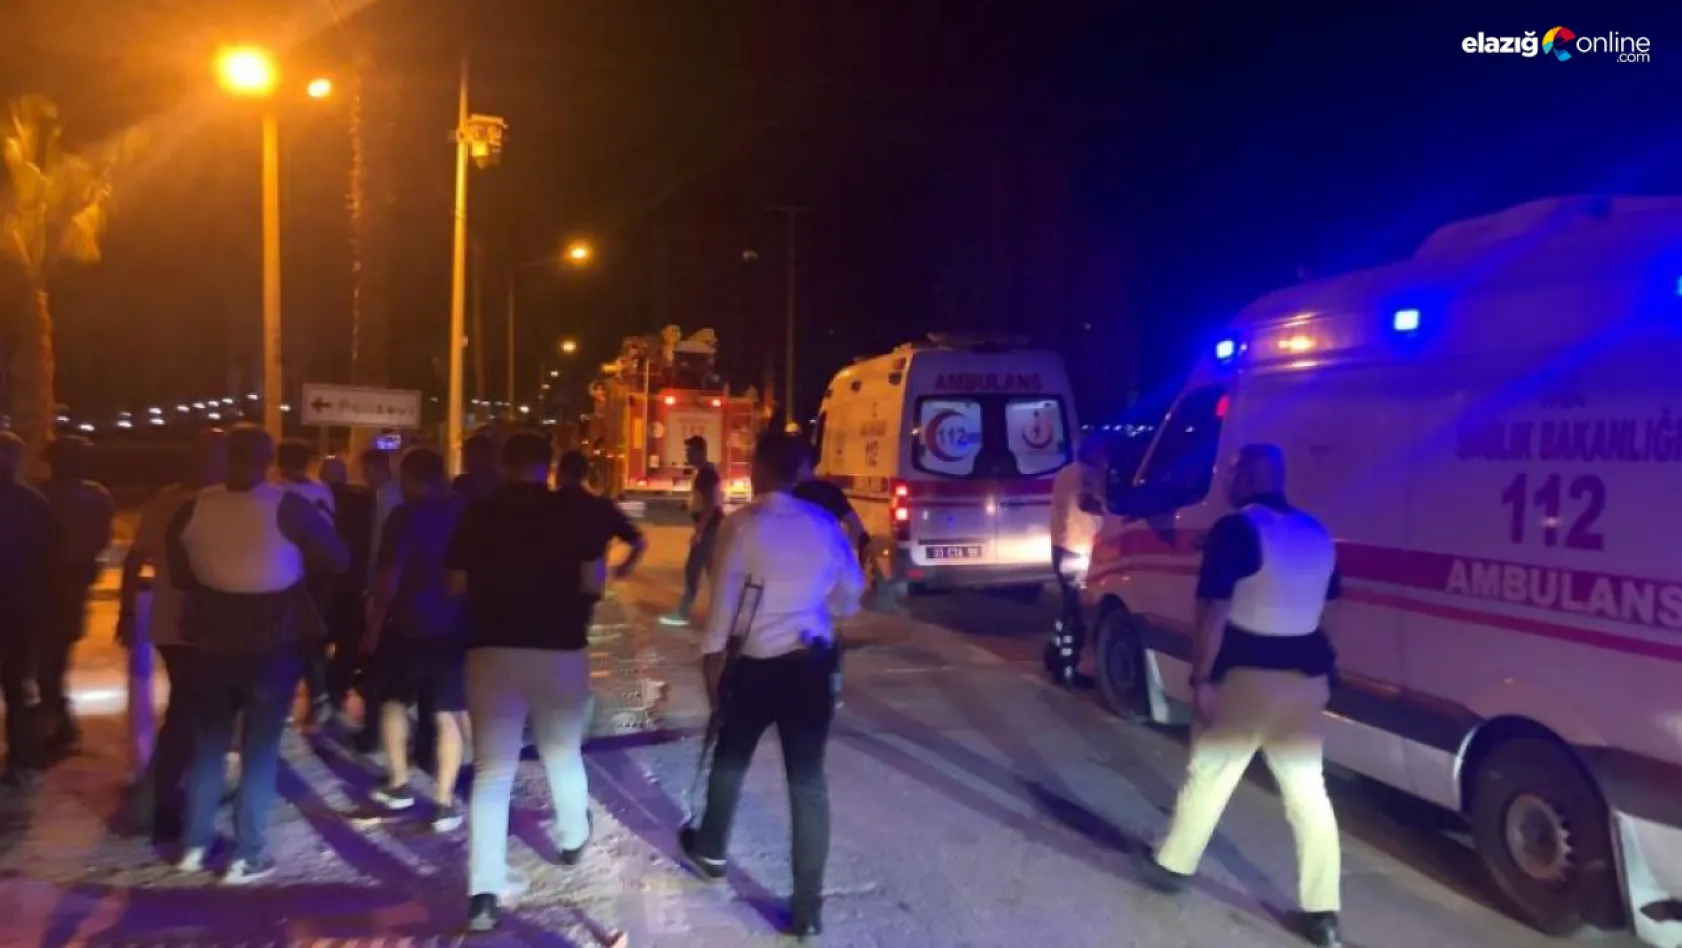 Mersin Tece Polisevi yakınında patlama! Olayda yaralıların olduğu bildirildi